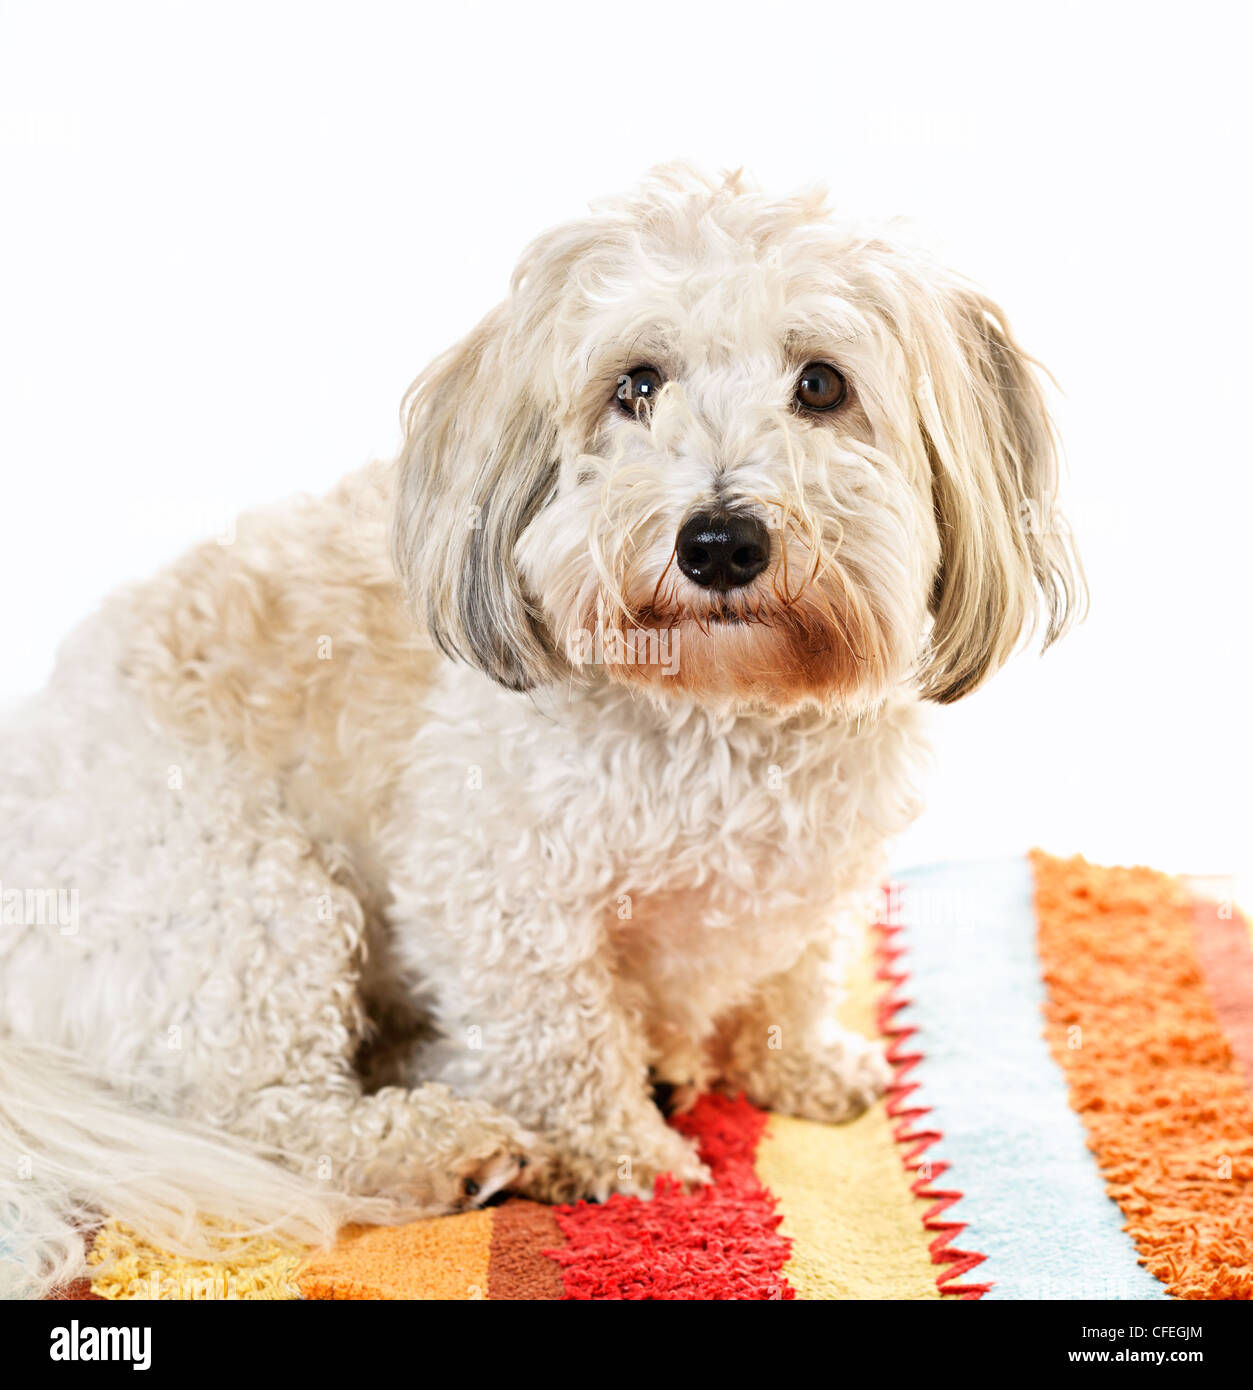 Adorabili coton de tulear dog sitter su tappeti colorati Foto Stock